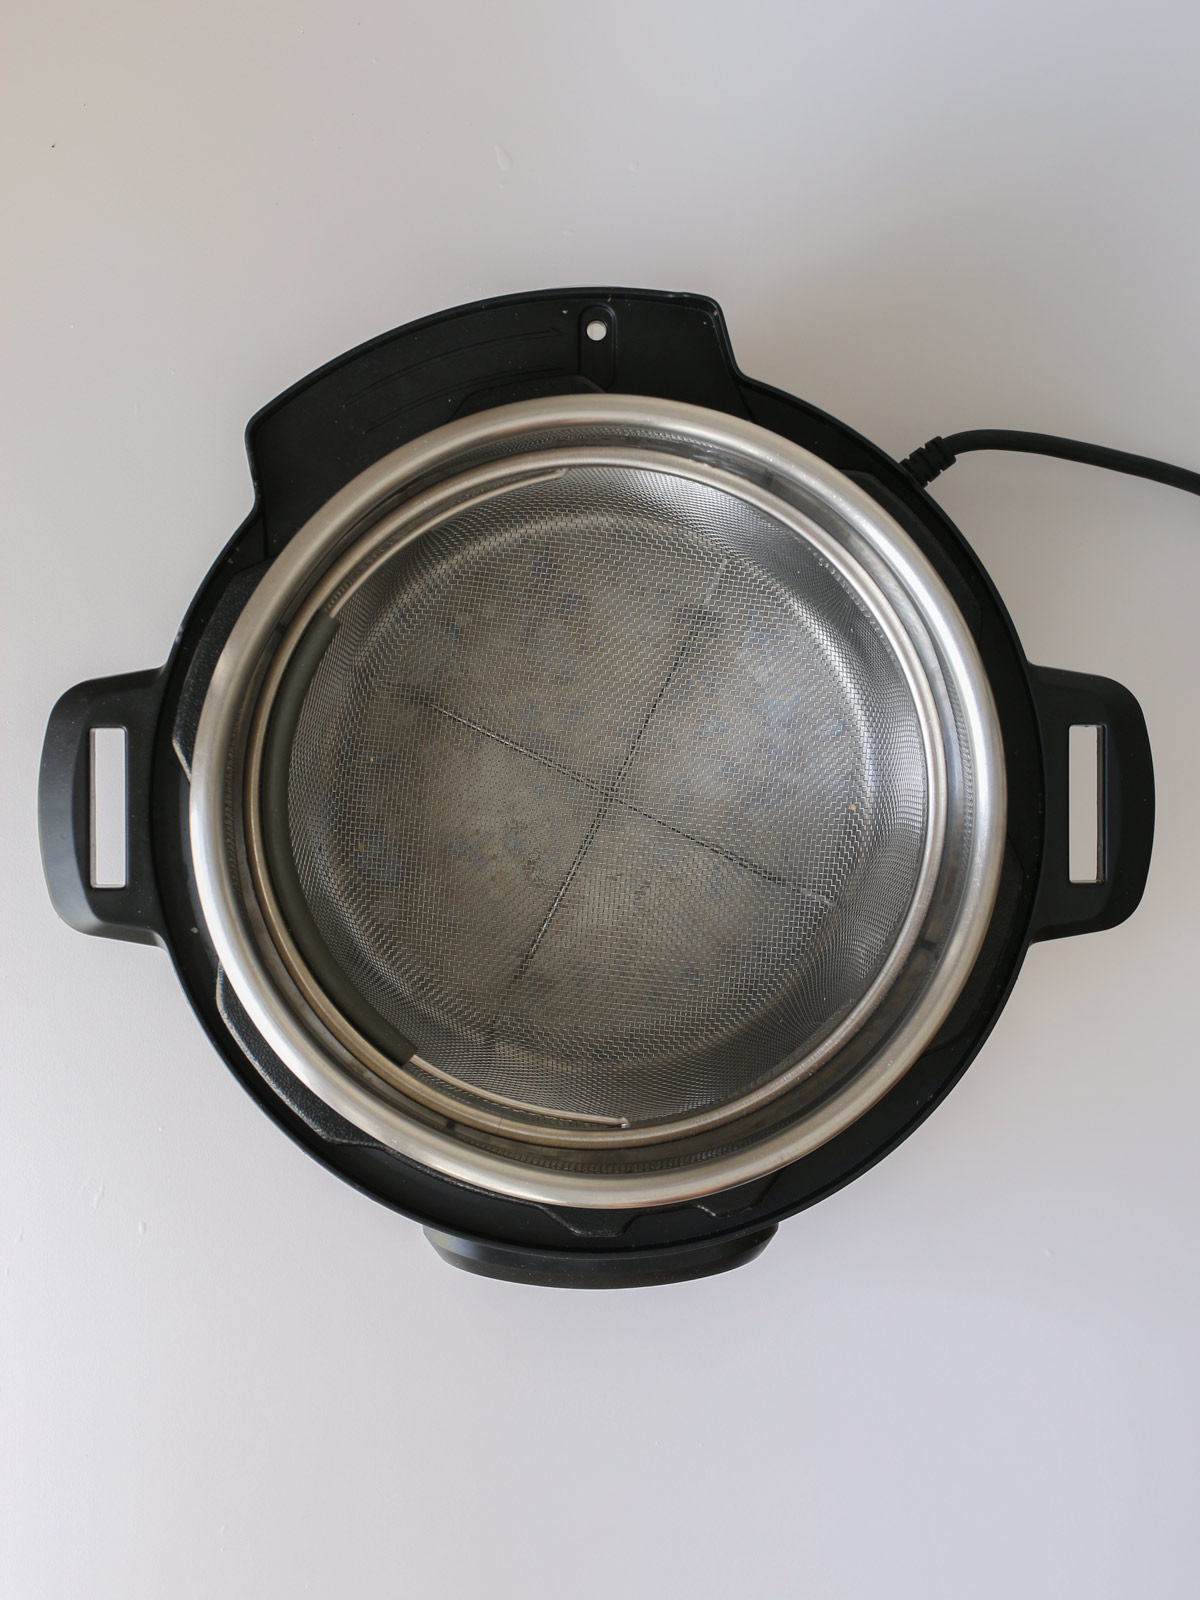 pressure cooker with steamer basket inserted.